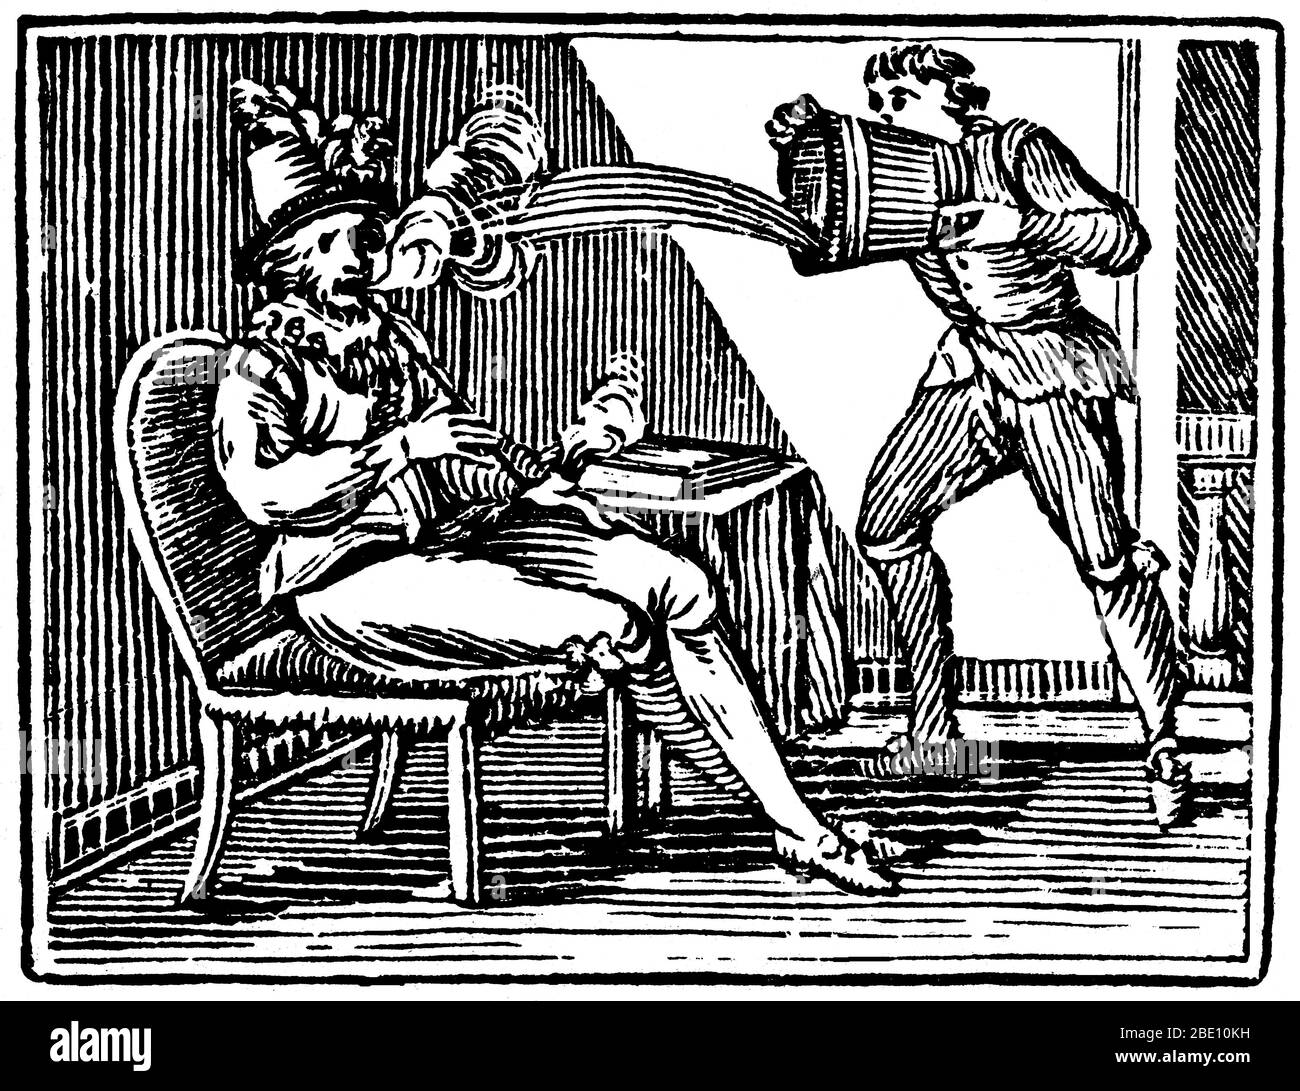 Angeblich, während das Rauchen eine Pfeife des ersten Tabak aus Amerika gebracht, Raleigh wurde von einem erschrockenen Diener, der ihn mit einem Krug Bier übergossen gelöscht. Walter Raleigh (1554 - Oktober 29,1618) war ein englischer Aristokrat, Schriftsteller, Dichter, Soldat, Höfling, Spion und Entdecker. Er ist am meisten für die Popularisierung Tabak in England erinnert. Sein Plan für die Kolonisierung in Nordamerika endete 1584 in einem Scheitern auf Roanoke Island, aber ebnete den Weg für die nachfolgenden Kolonien. Gravur, Mitte des 19. Jahrhunderts. Stockfoto